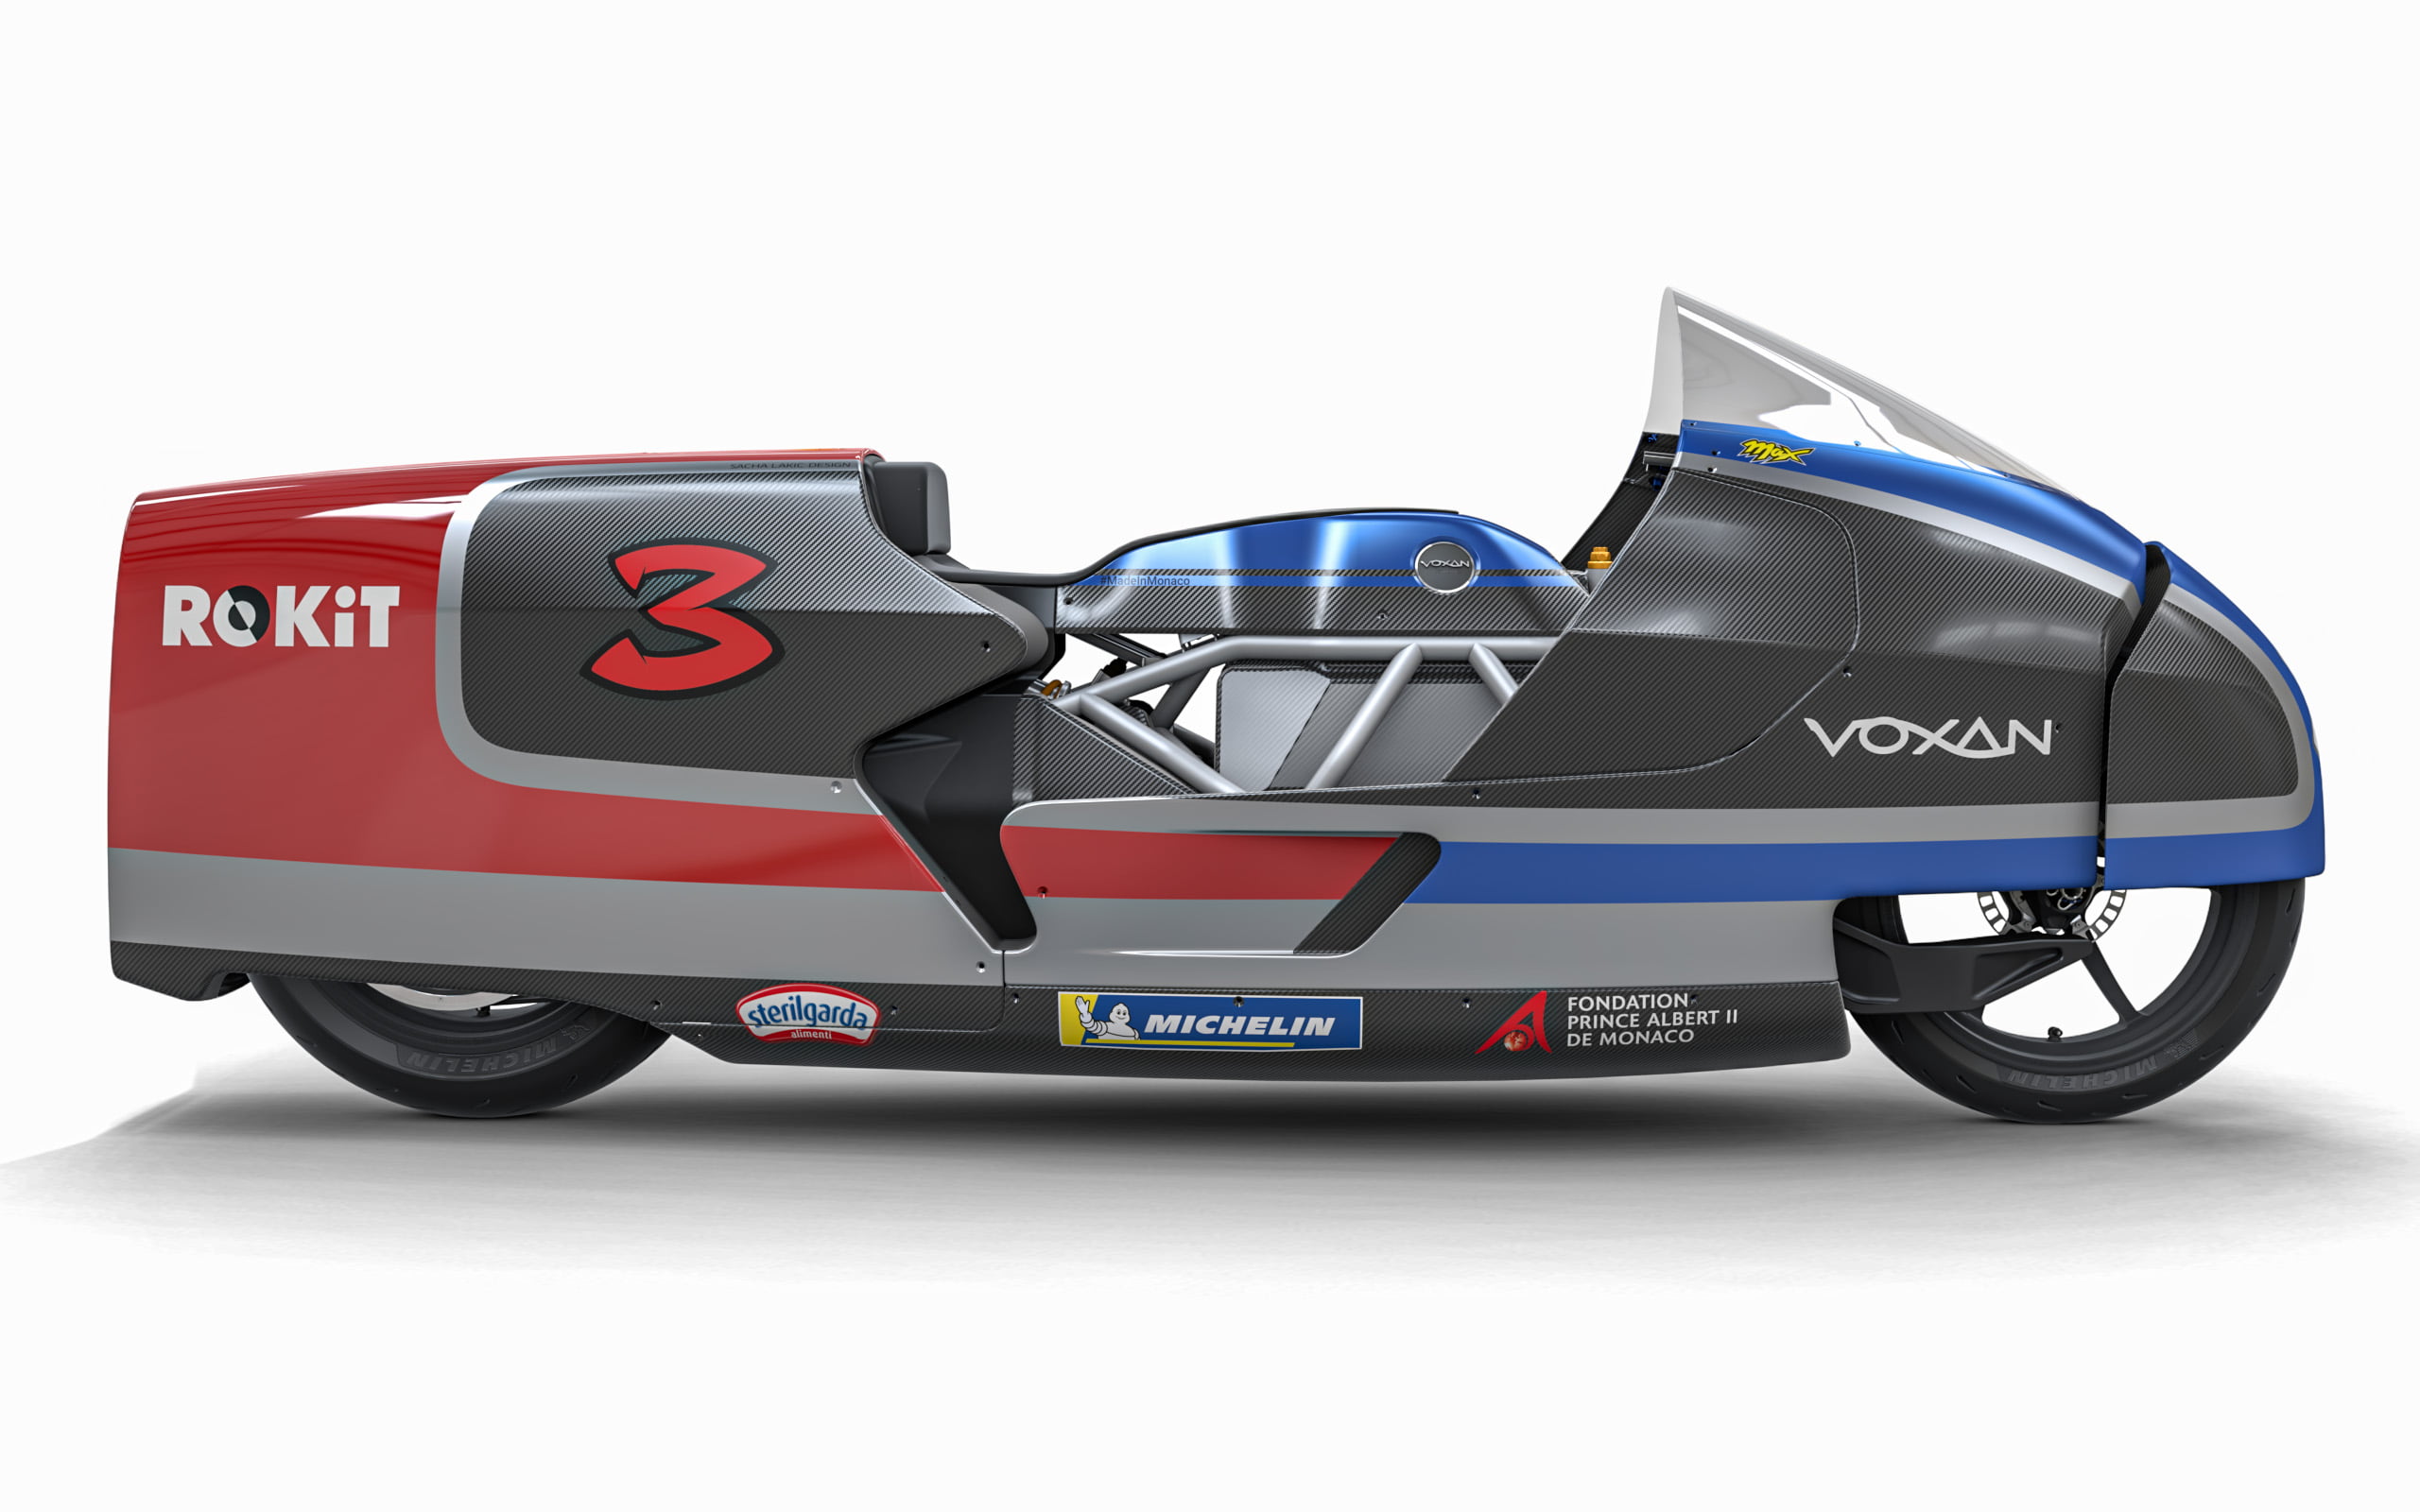 Insolite : Voxan débute de nouveaux tests de vitesse en Floride avec un modèle de Wattman inédit